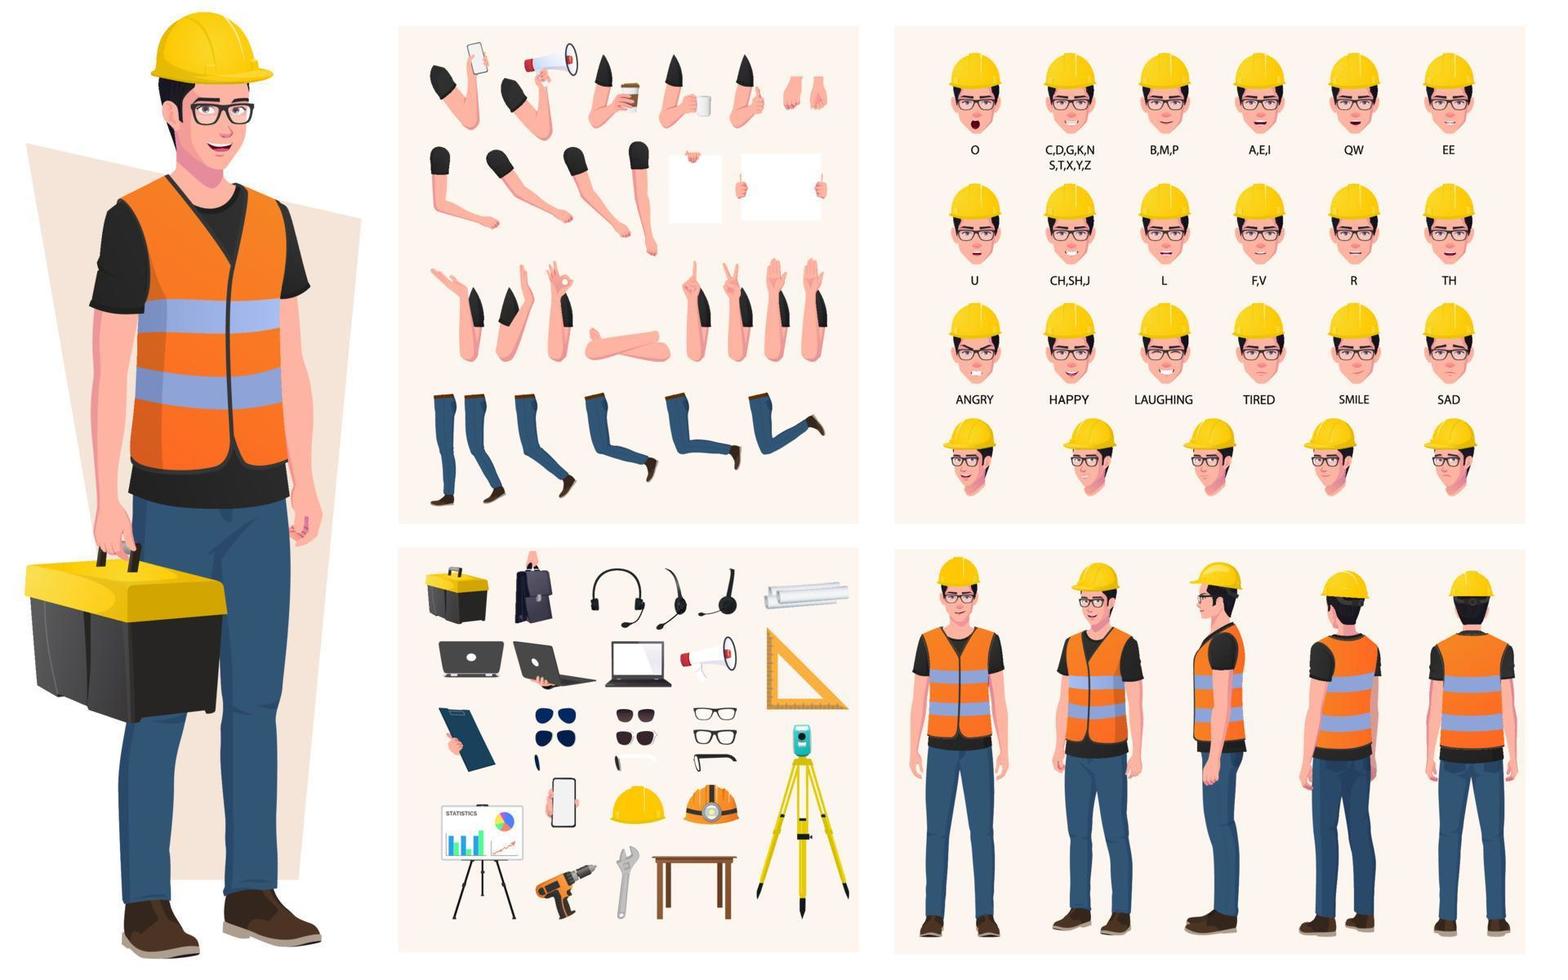 obrero de la construcción, paquete de creación de personajes de ingeniero, con herramientas, equipos, gestos y expresiones faciales. vector